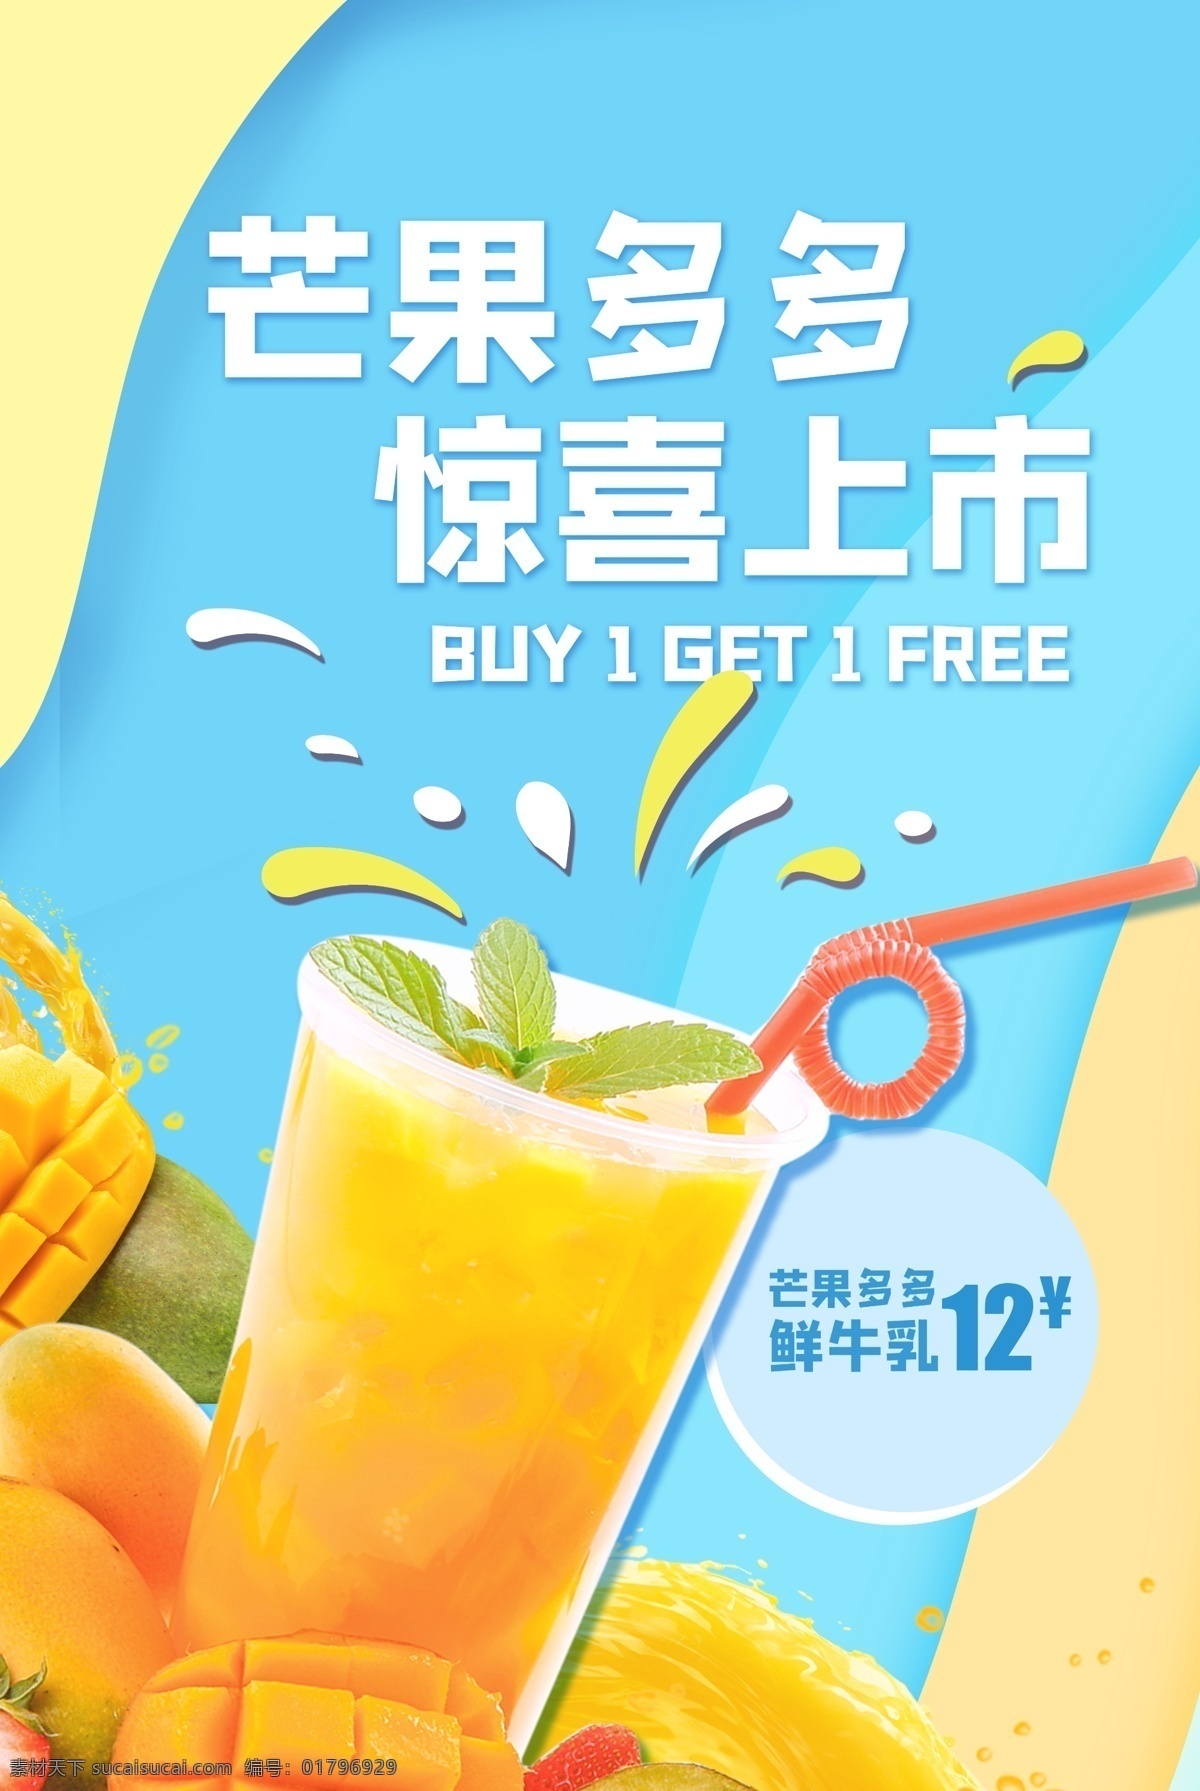 芒果 饮品 夏季 活动 宣传海报 宣传 海报 饮料 甜品 类